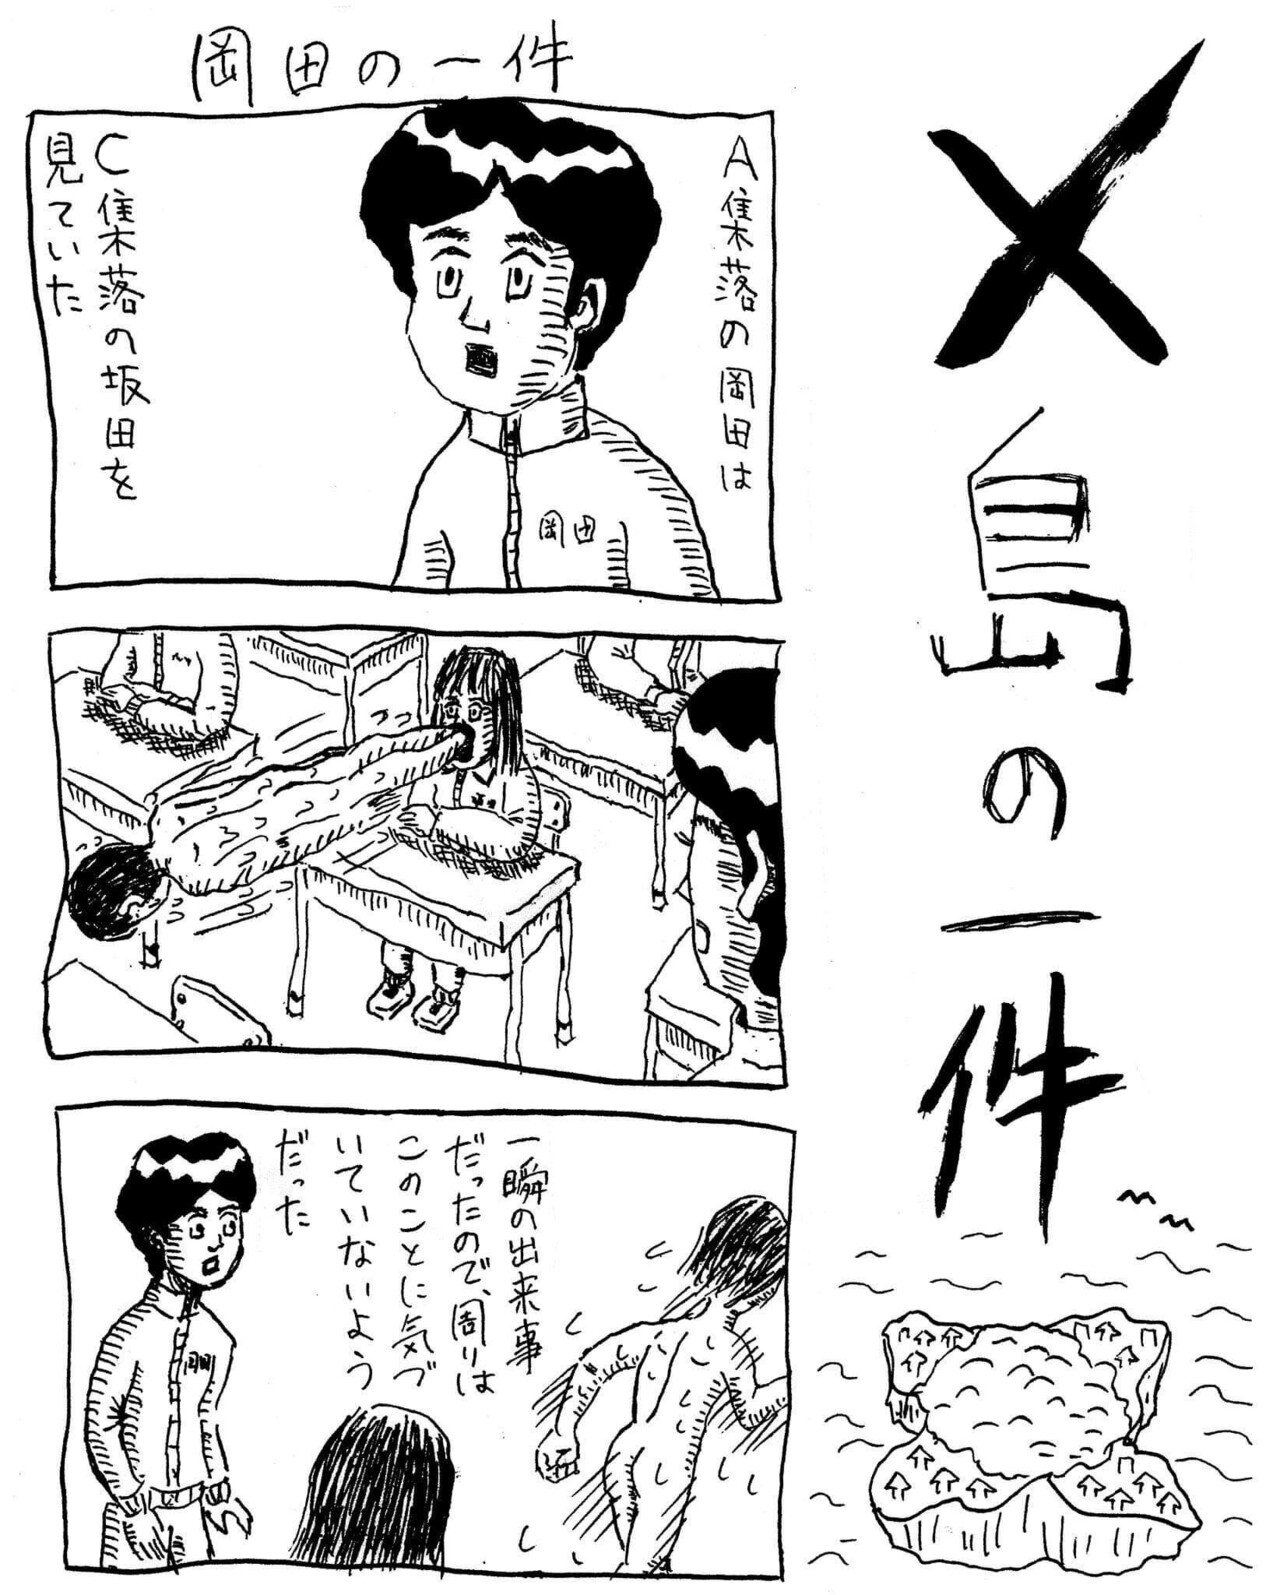 X島の一件 岡田の一件 中川学 漫画家 Note